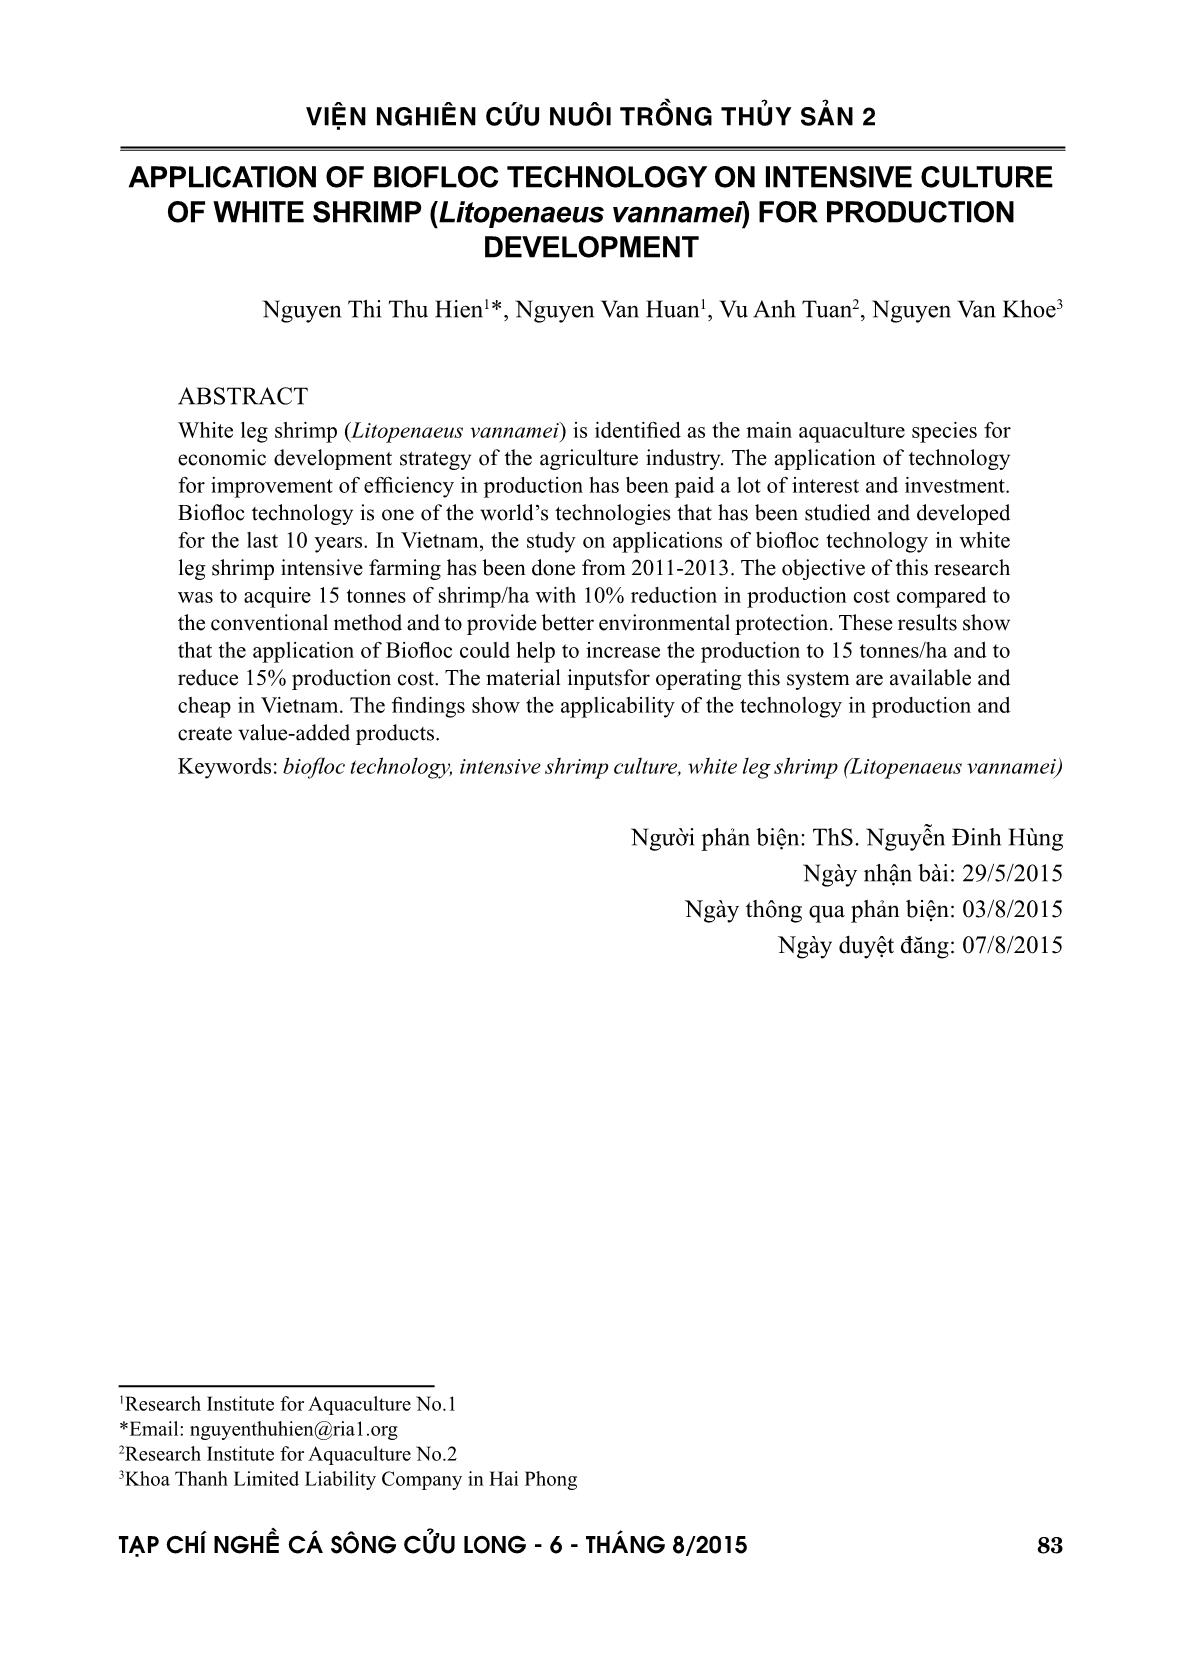 Ứng dụng công nghệ biofloc nuôi thâm canh tôm he chân trắng (Litopenaeus vannamei) vào phát triển sản xuất trang 9